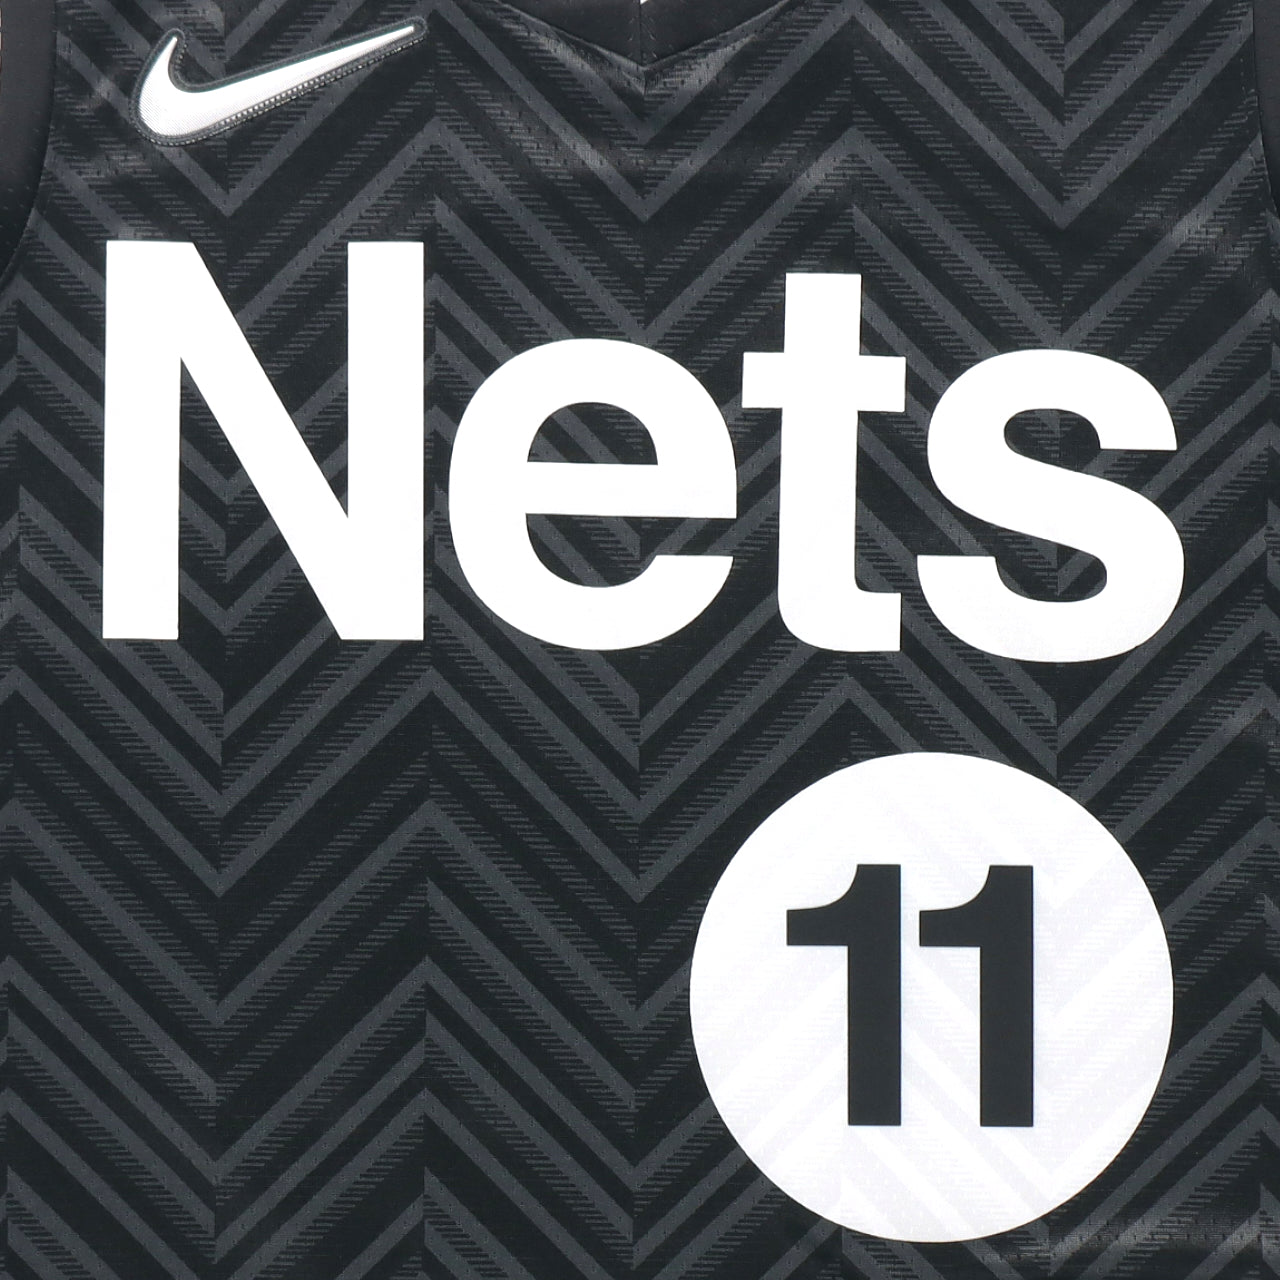 Kyrie Irving Brooklyn Nets 2020-2021 Earned Edition Nike Swingman Jersey - Black